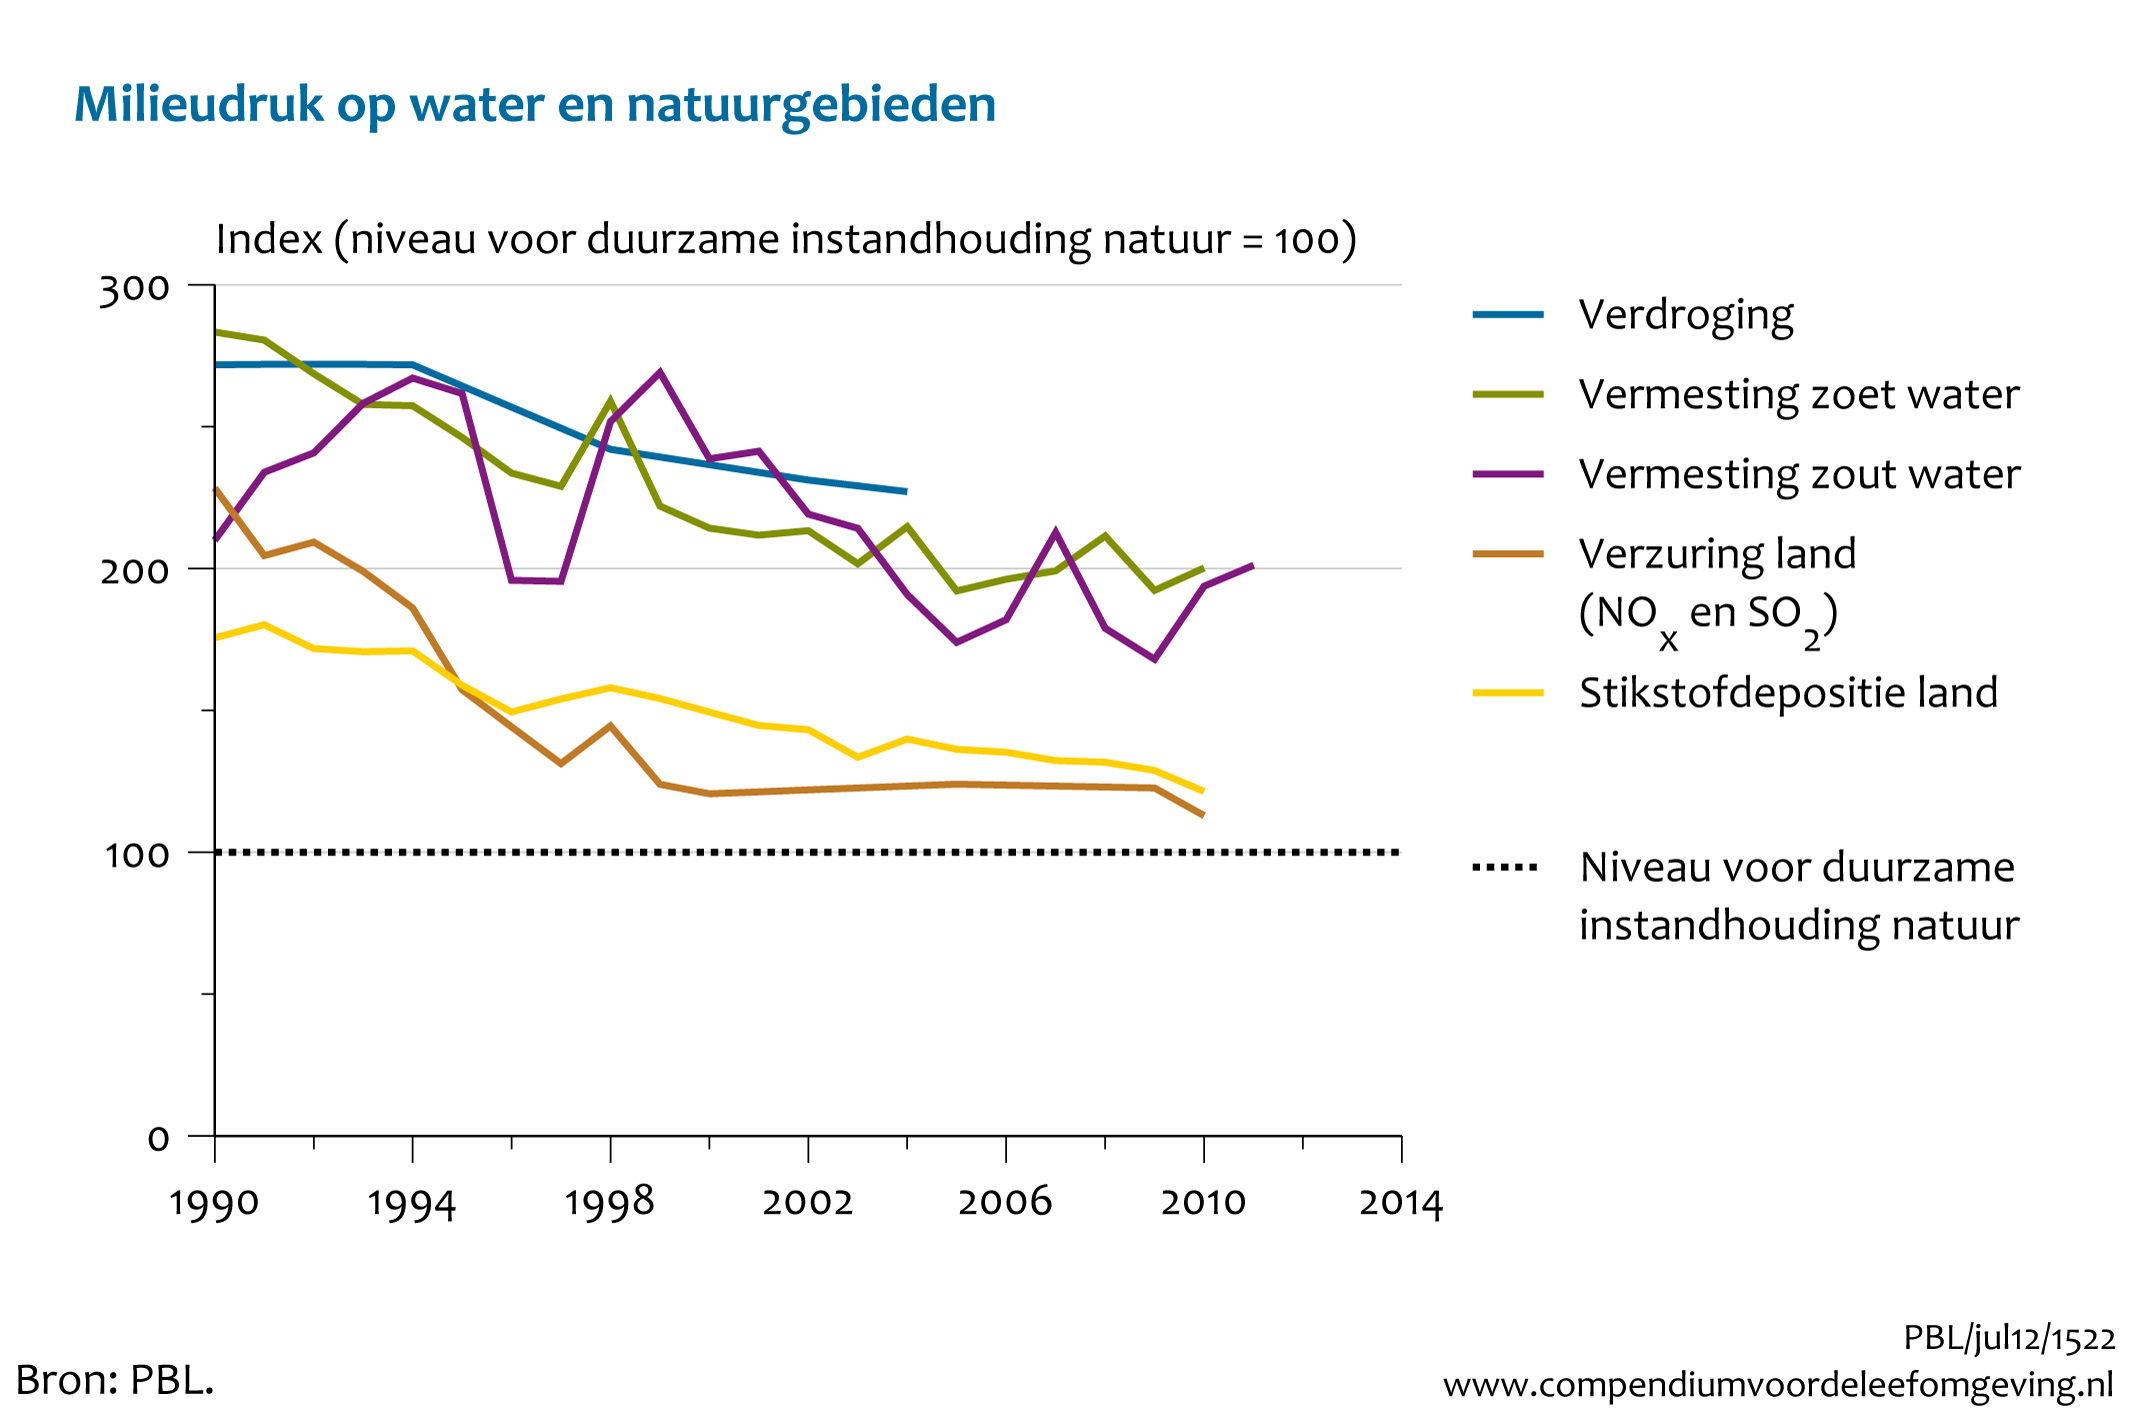 Figuur Milieu- en watercondities in de natuur verbeteren sinds 1990, maar zijn nog onvoldoende voor duurzame bescherming van de natuur. In de rest van de tekst wordt deze figuur uitgebreider uitgelegd.